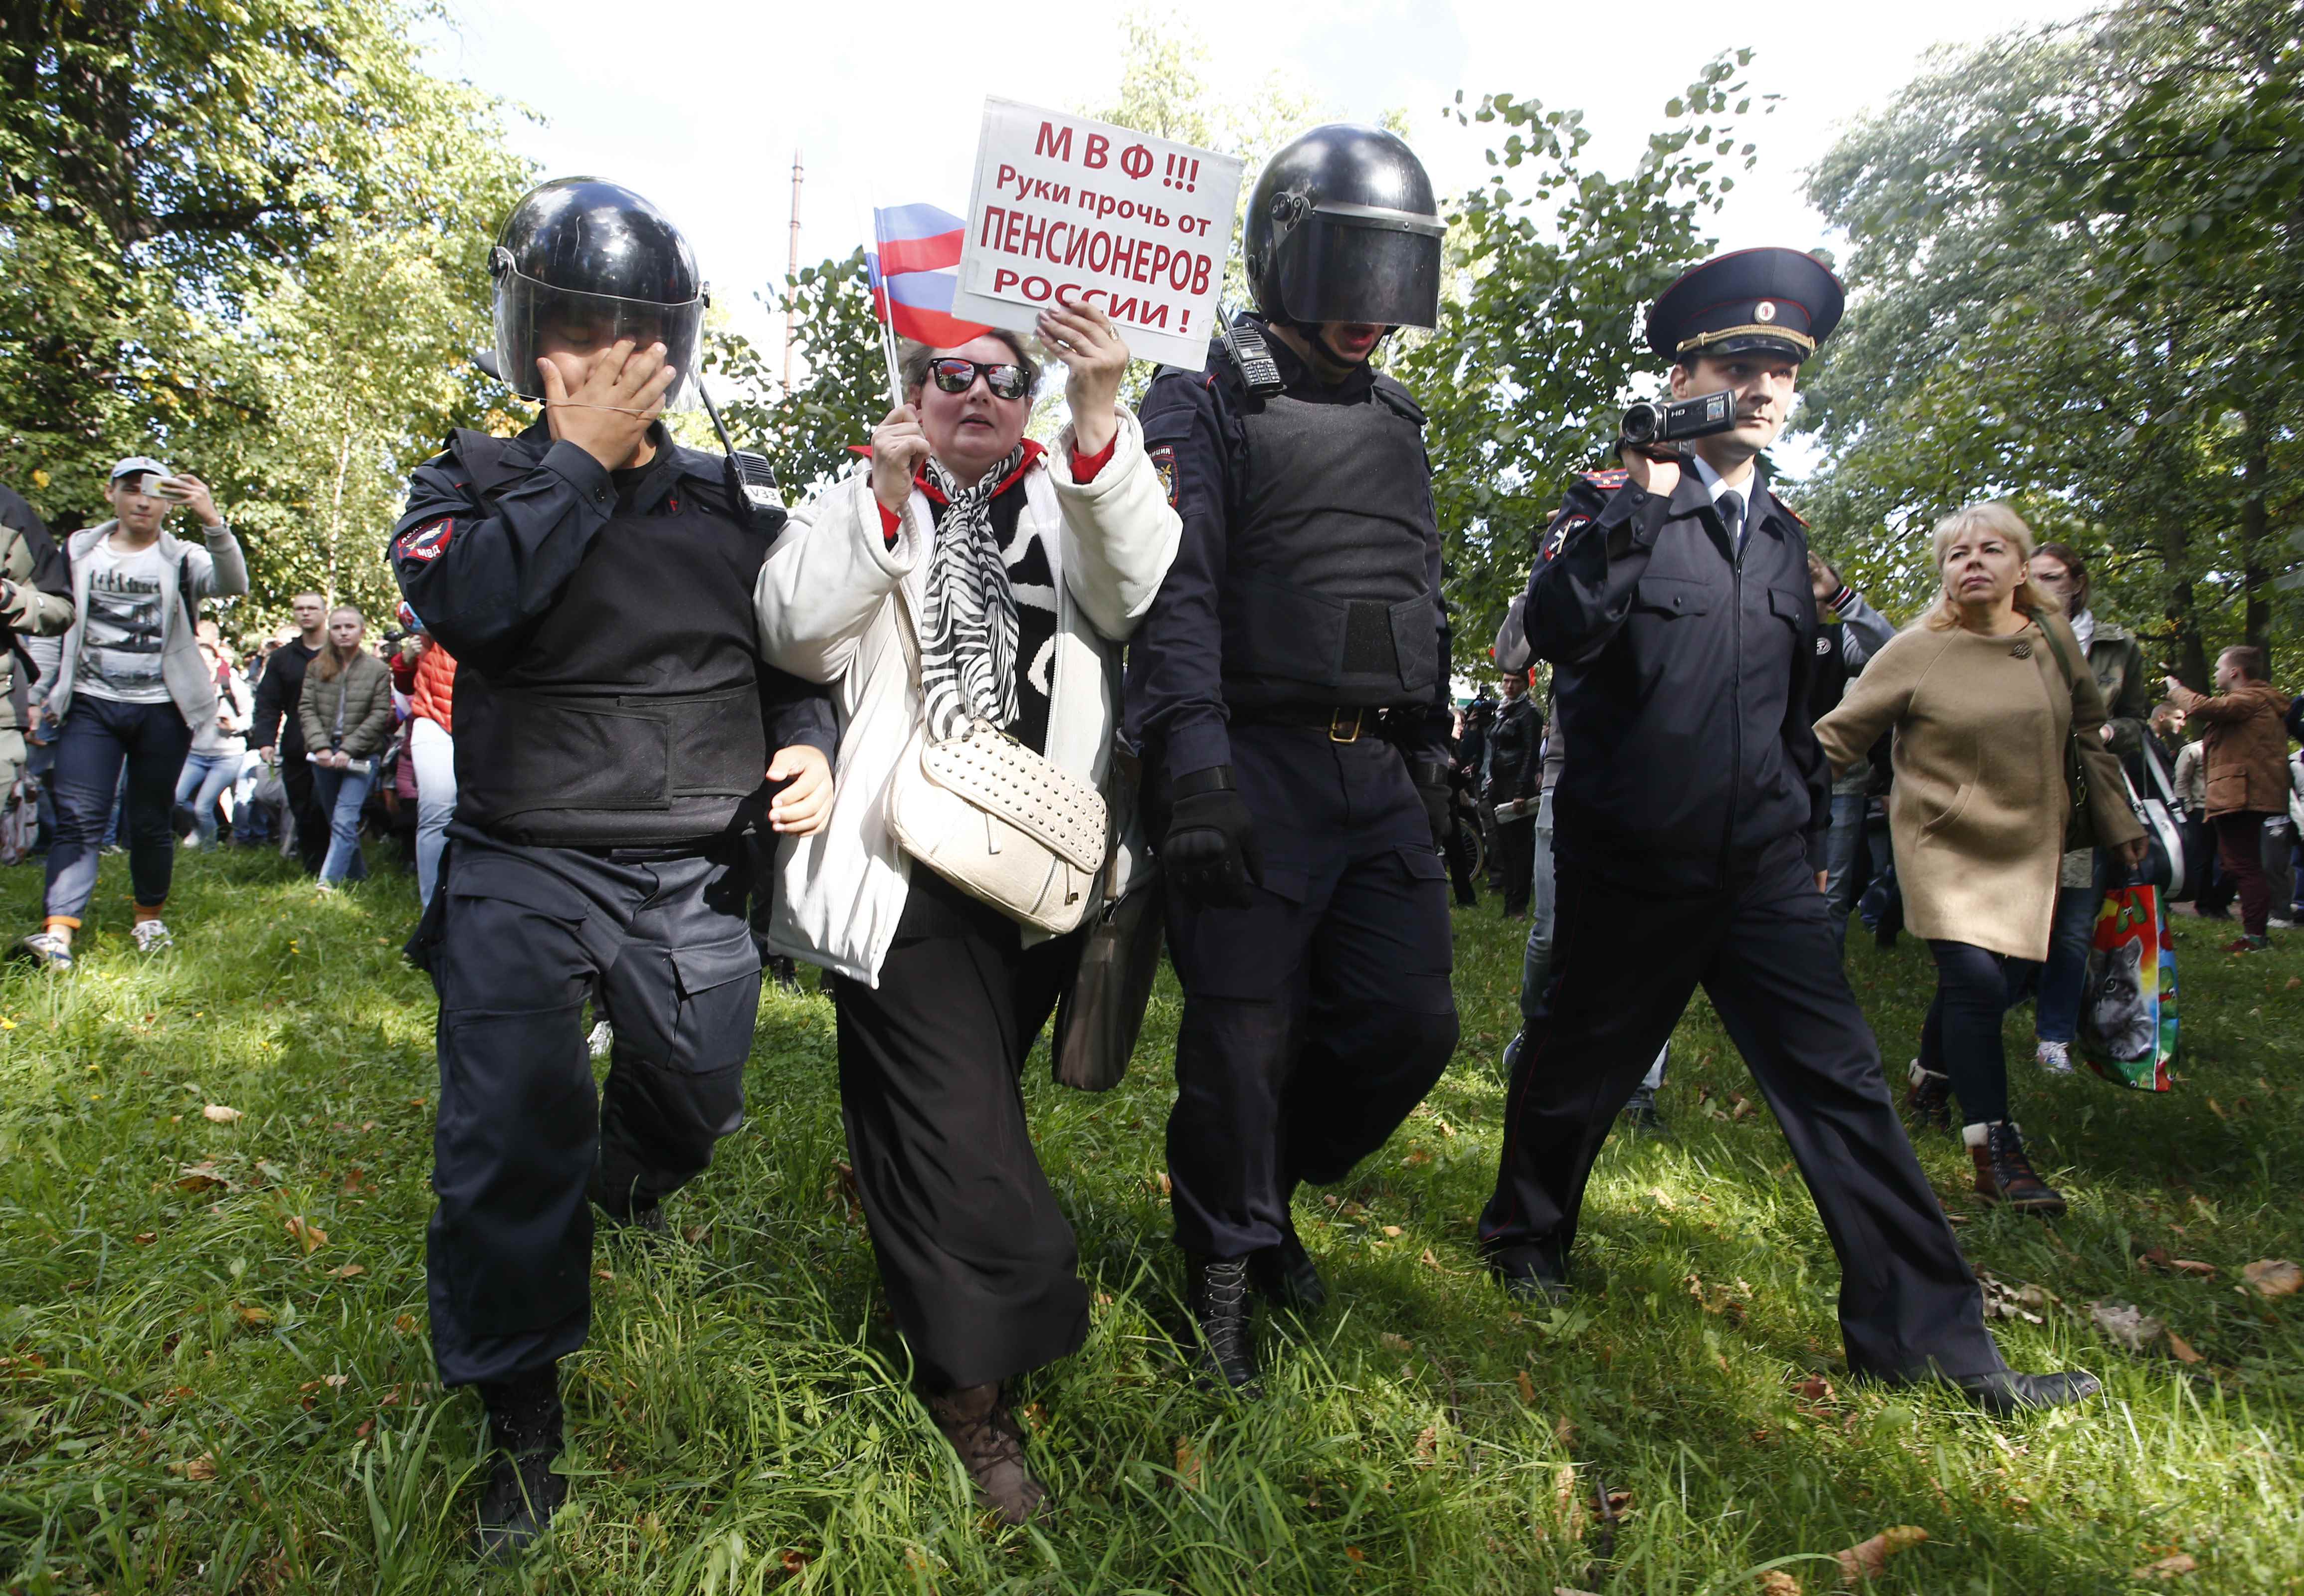 قوات الأمن تقبض على إحدى الناشطات الروسيات